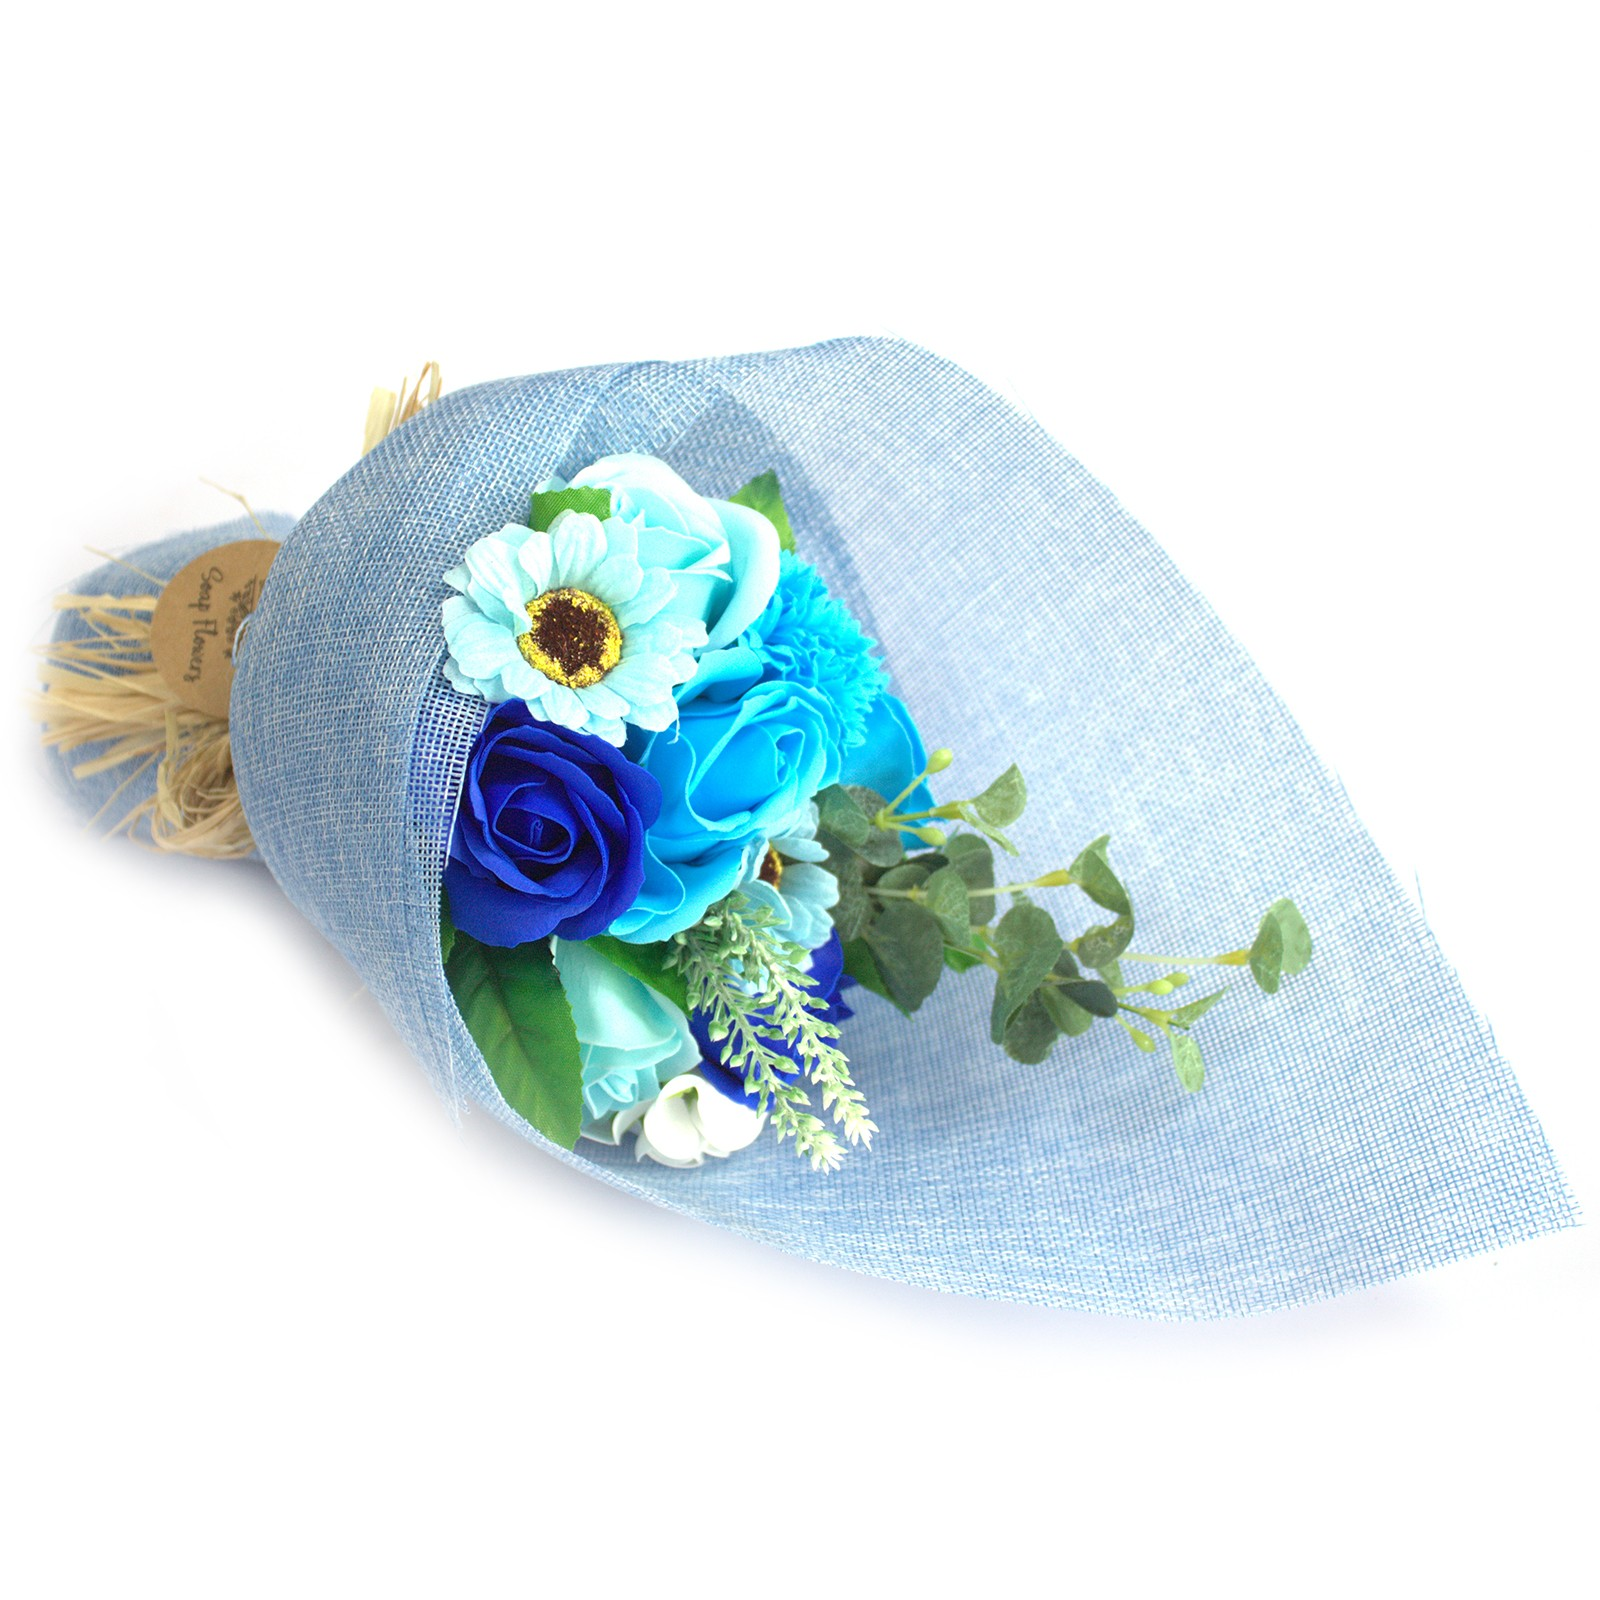 Blue soap flower bouquet